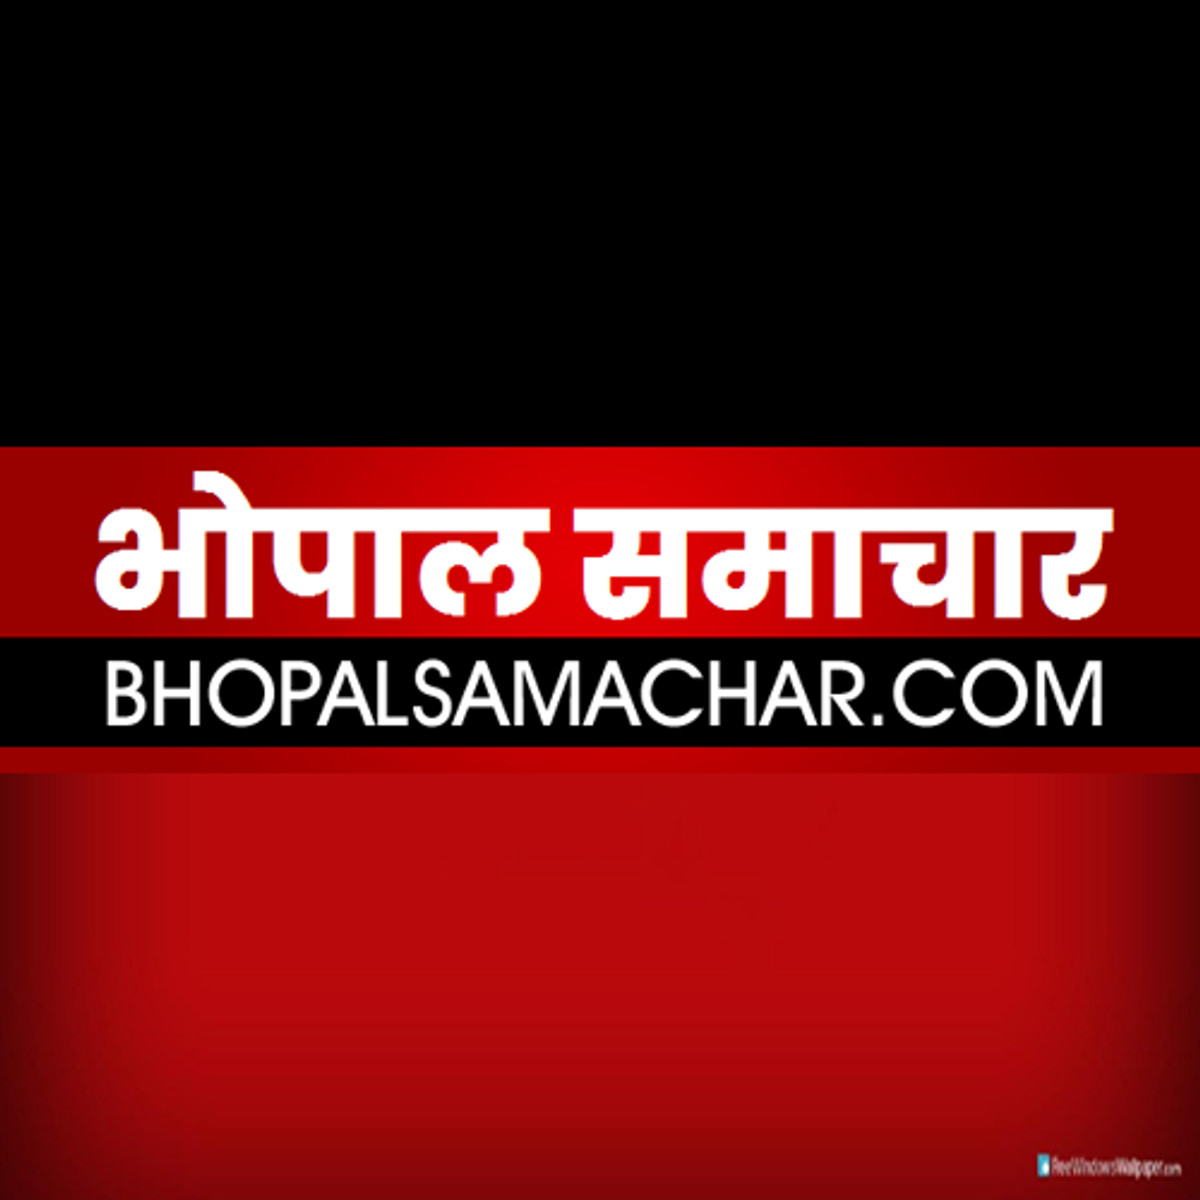 Bhopal Samachar photo